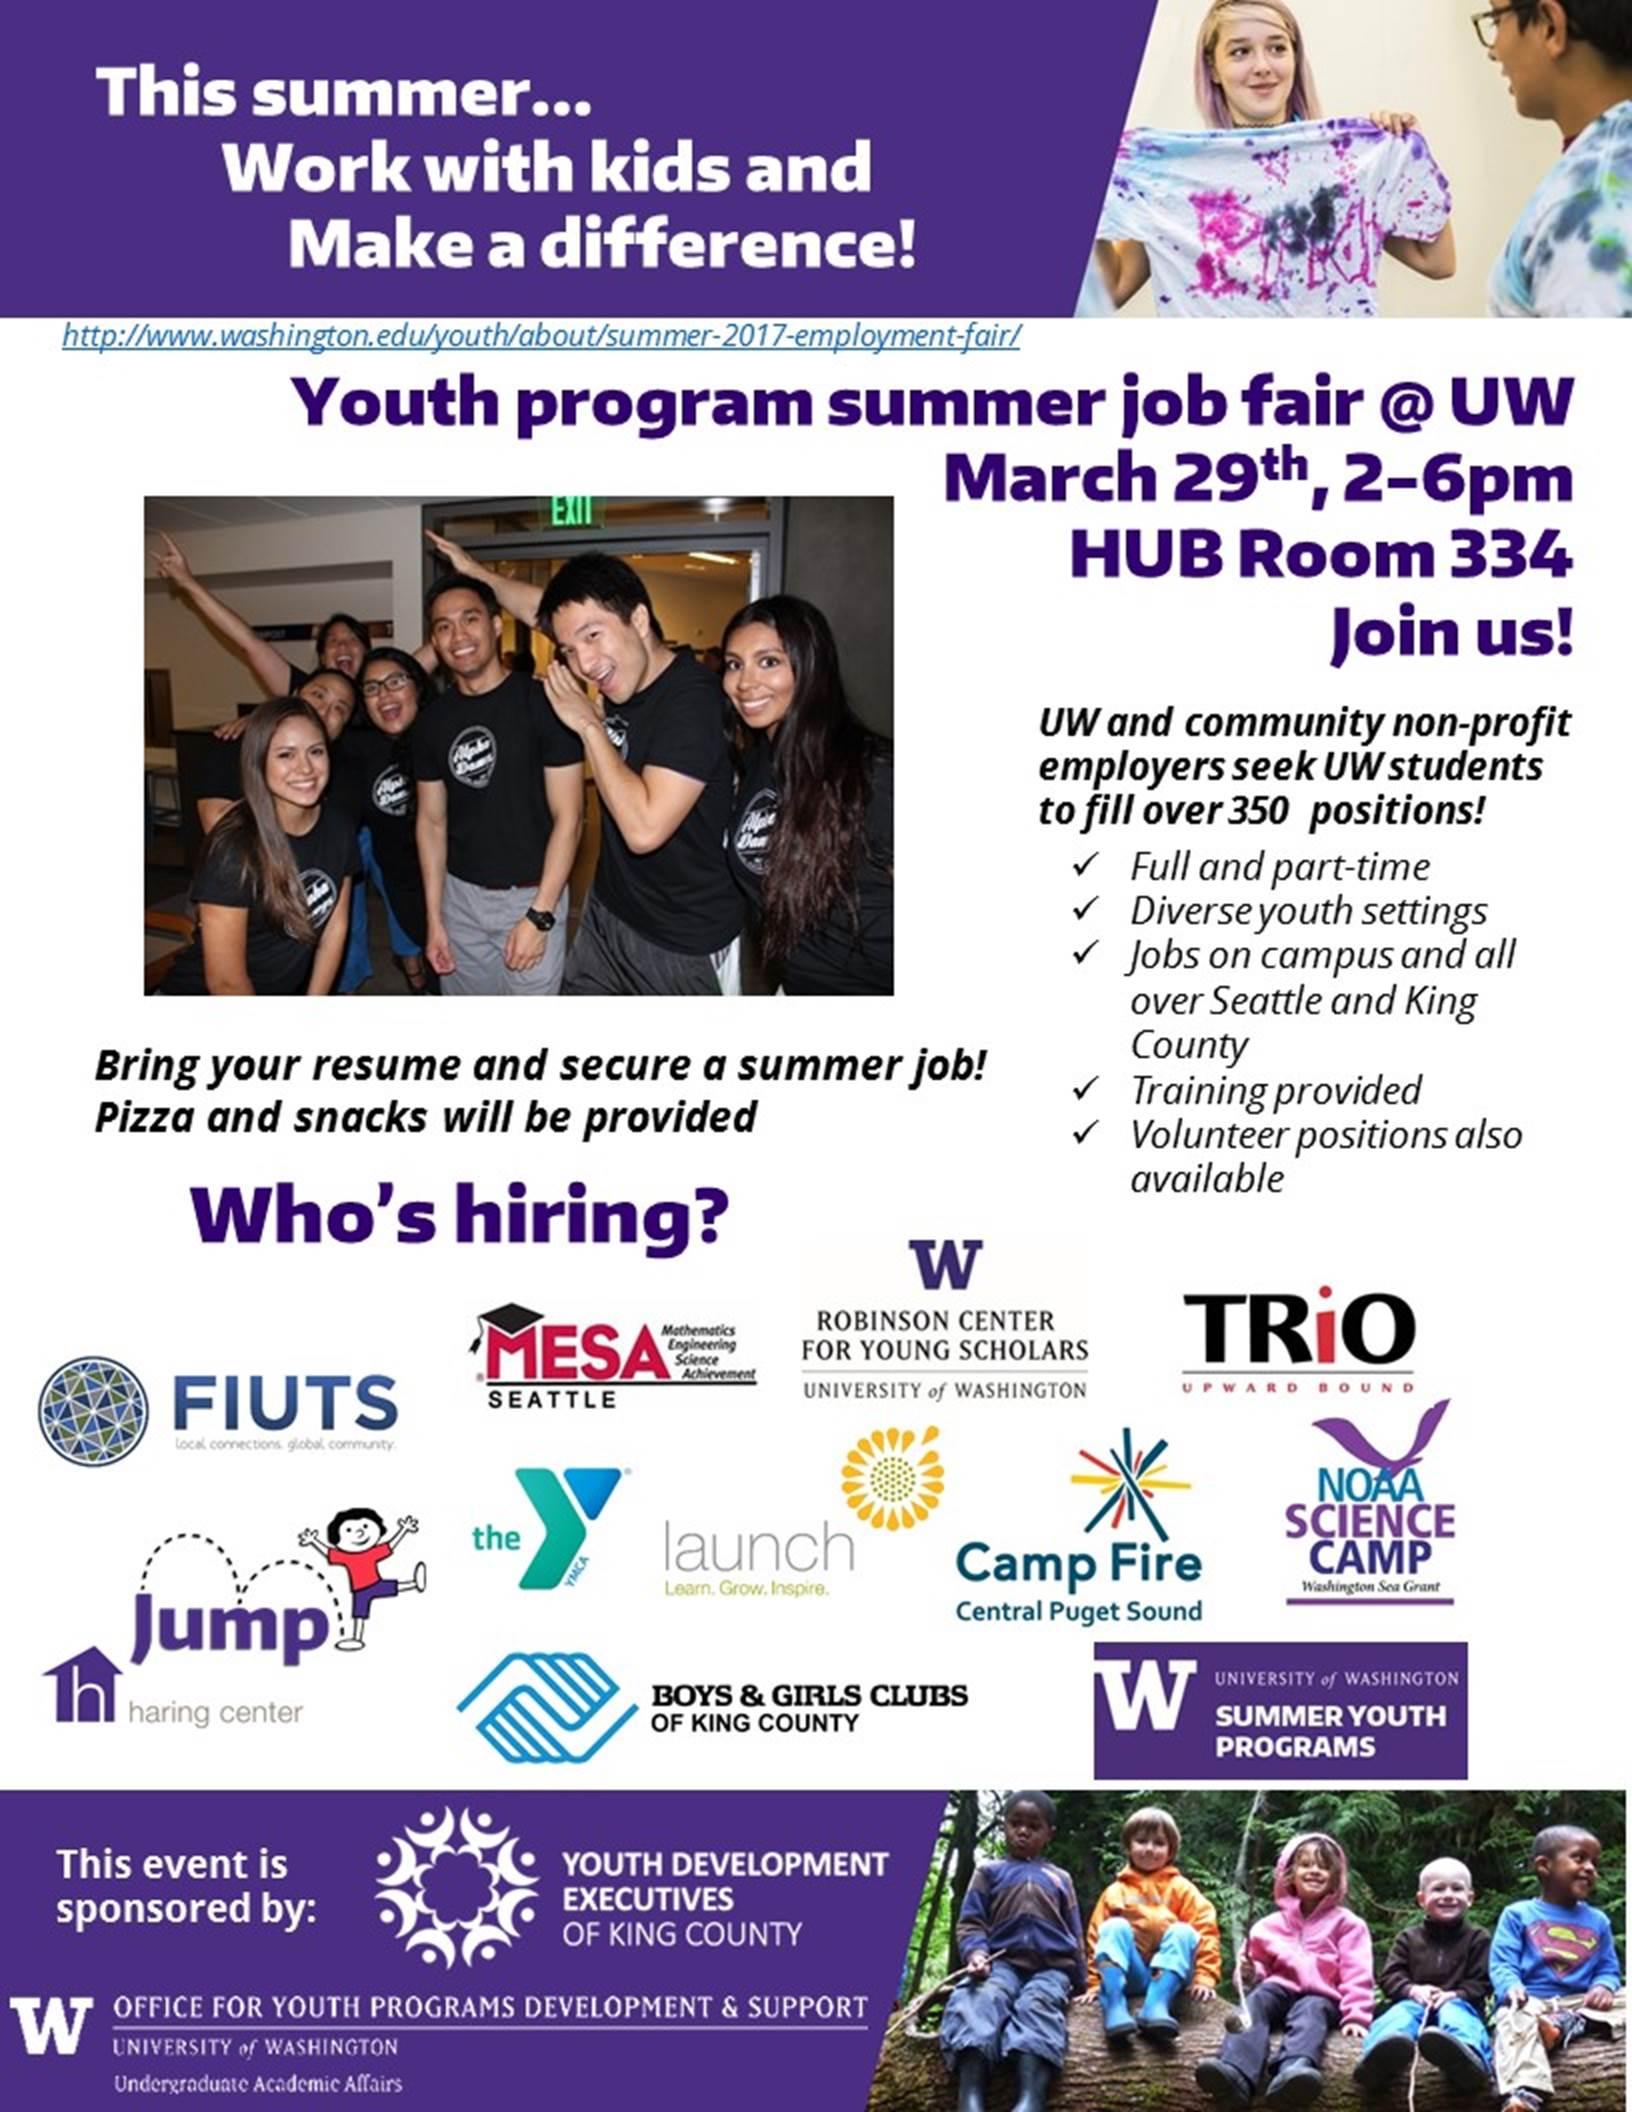 Youth program summer job fair